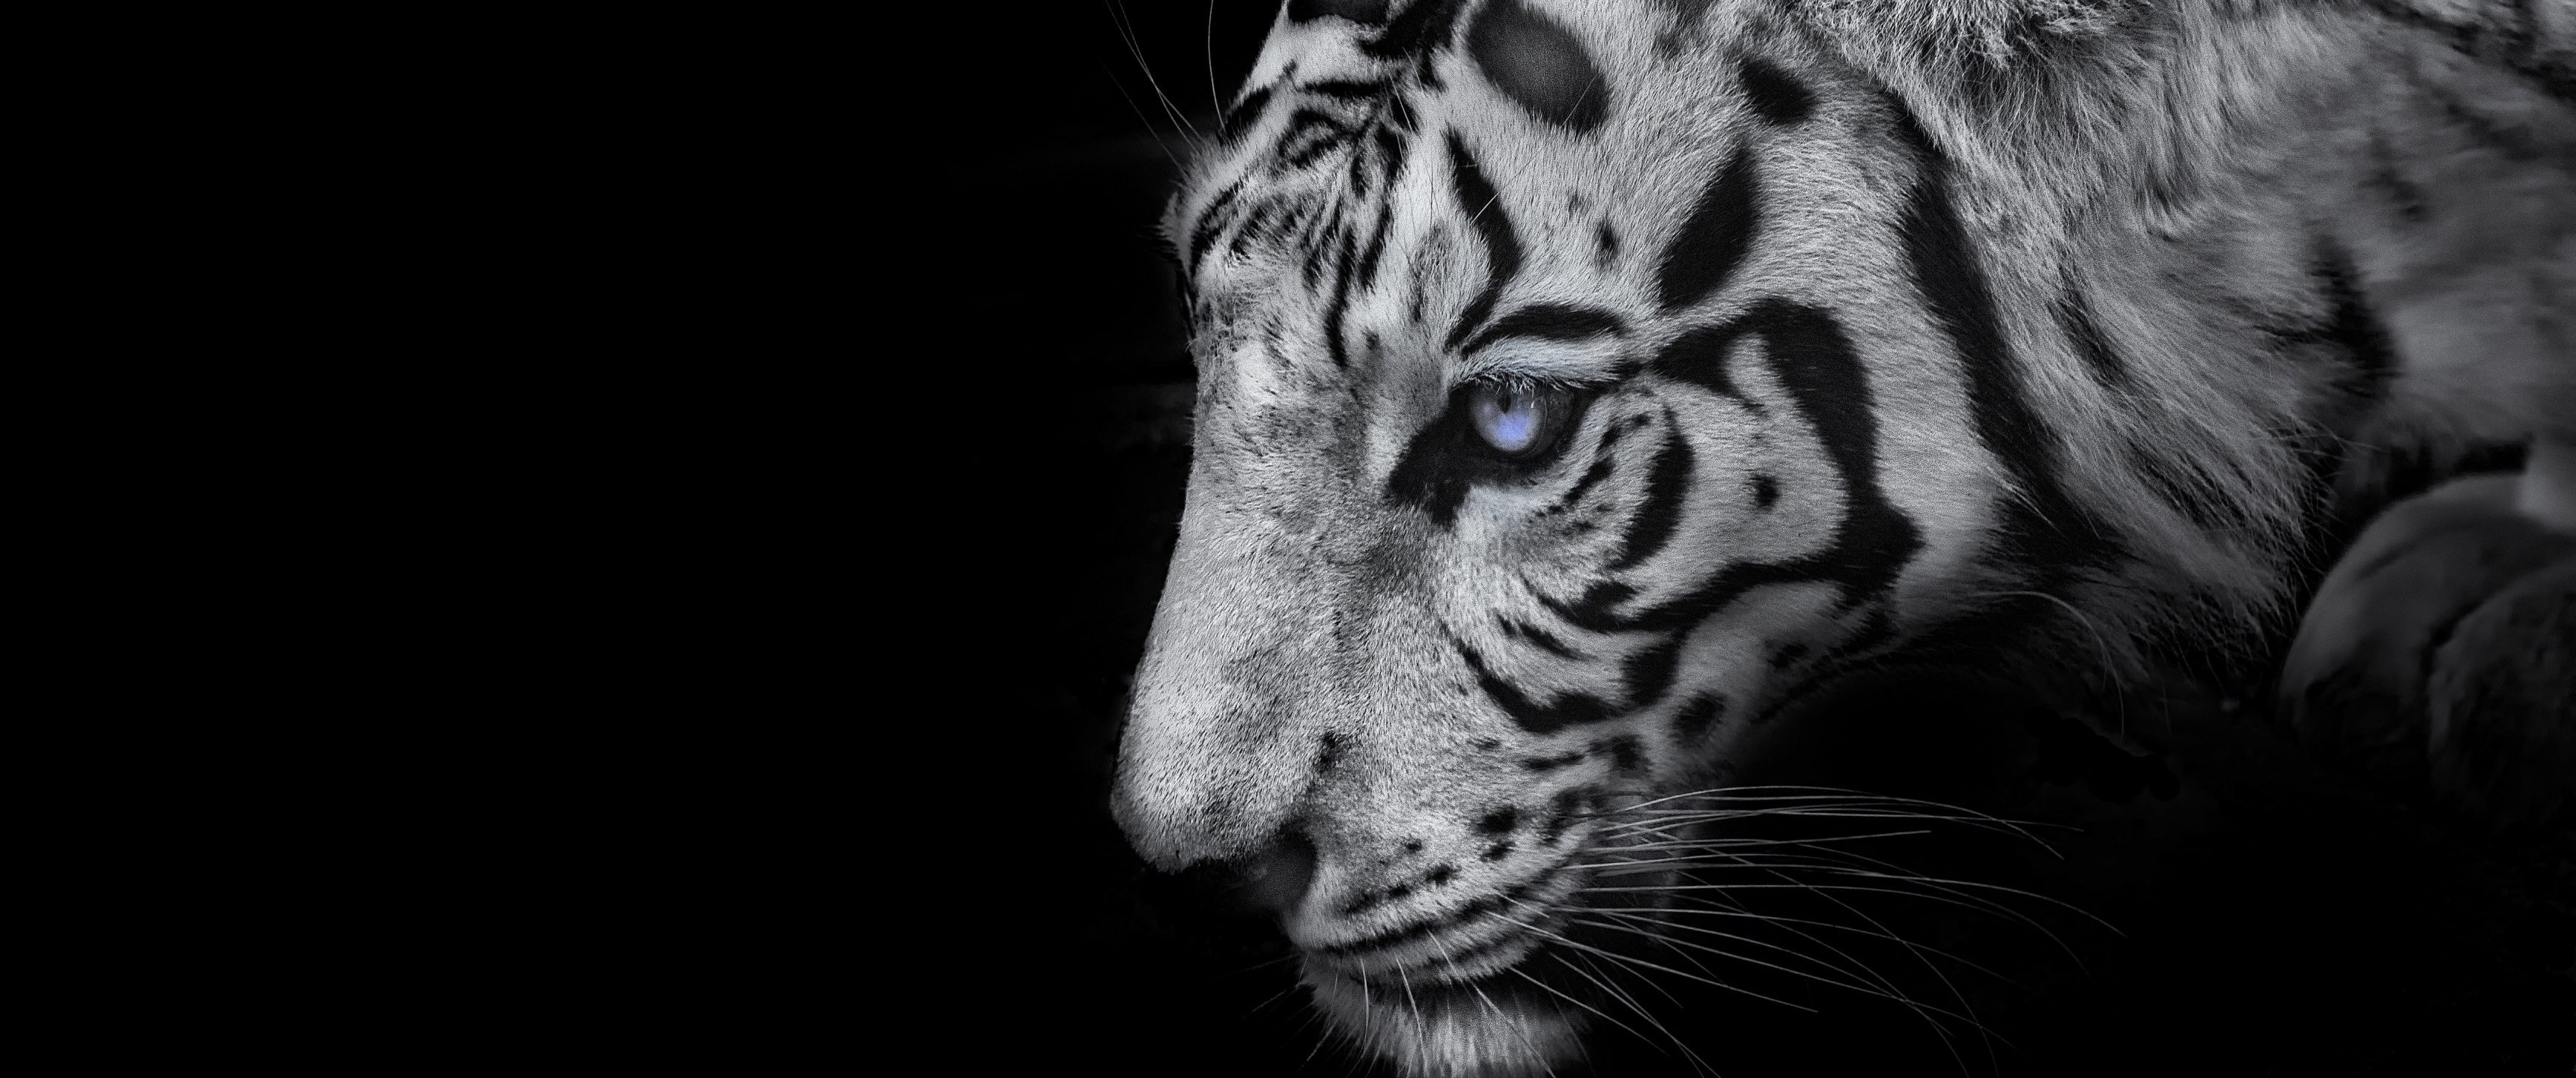 Hổ trắng là một loài động vật đầy uy lực và quyền năng. Hình ảnh một hổ trắng đang lung linh trên màn hình sẽ khiến bạn phải ngưỡng mộ vẻ đẹp hoang dã của chúng. Hãy khám phá bức ảnh đầy nghẹt thở này và cảm nhận sự vượt trội của loài hổ trắng.